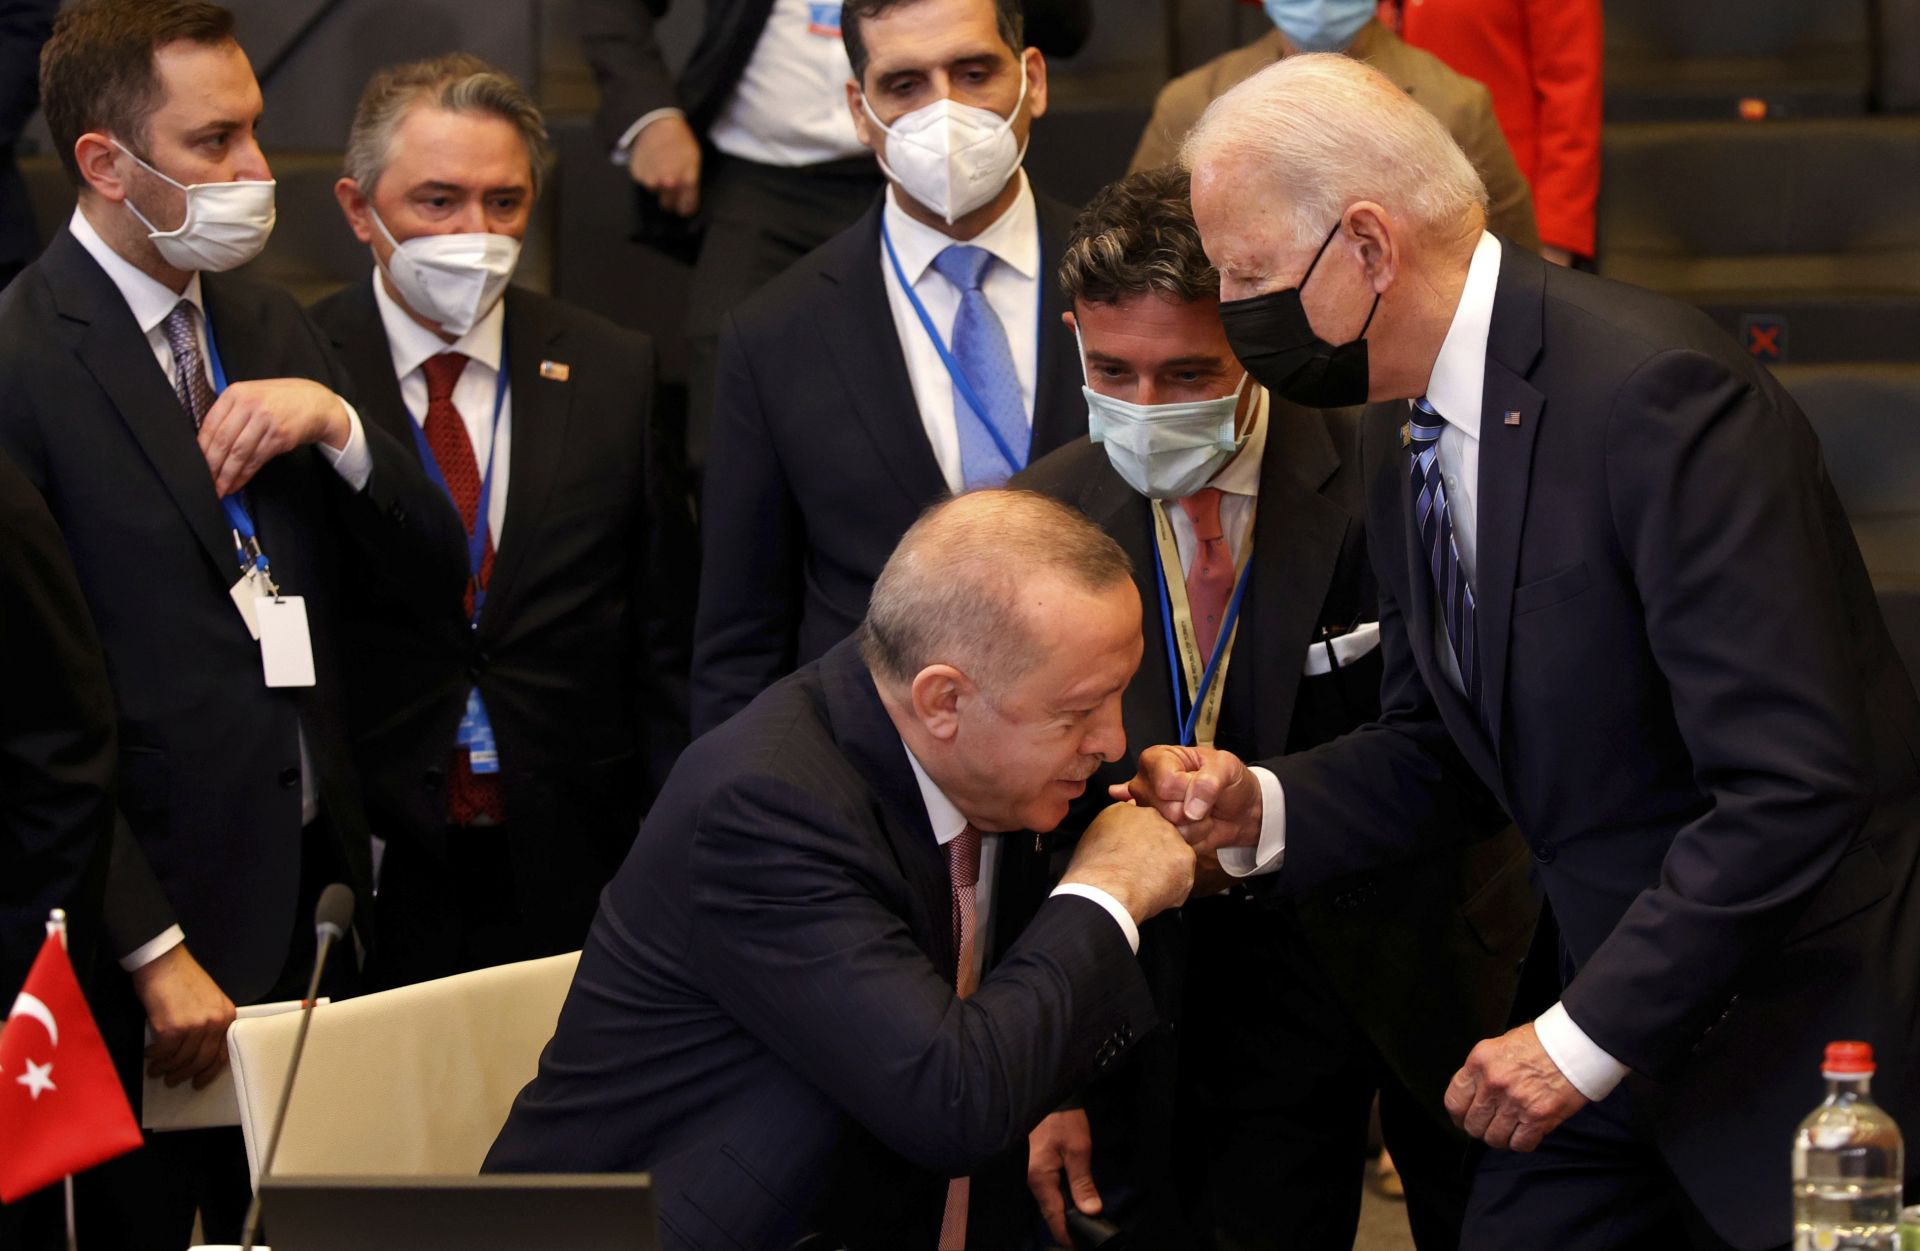  Ердоган се сблъсква с Байдън, до момента в който се изправя да го поздравява по време на пленарна сесия на срещата на върха на НАТО в Брюксел 